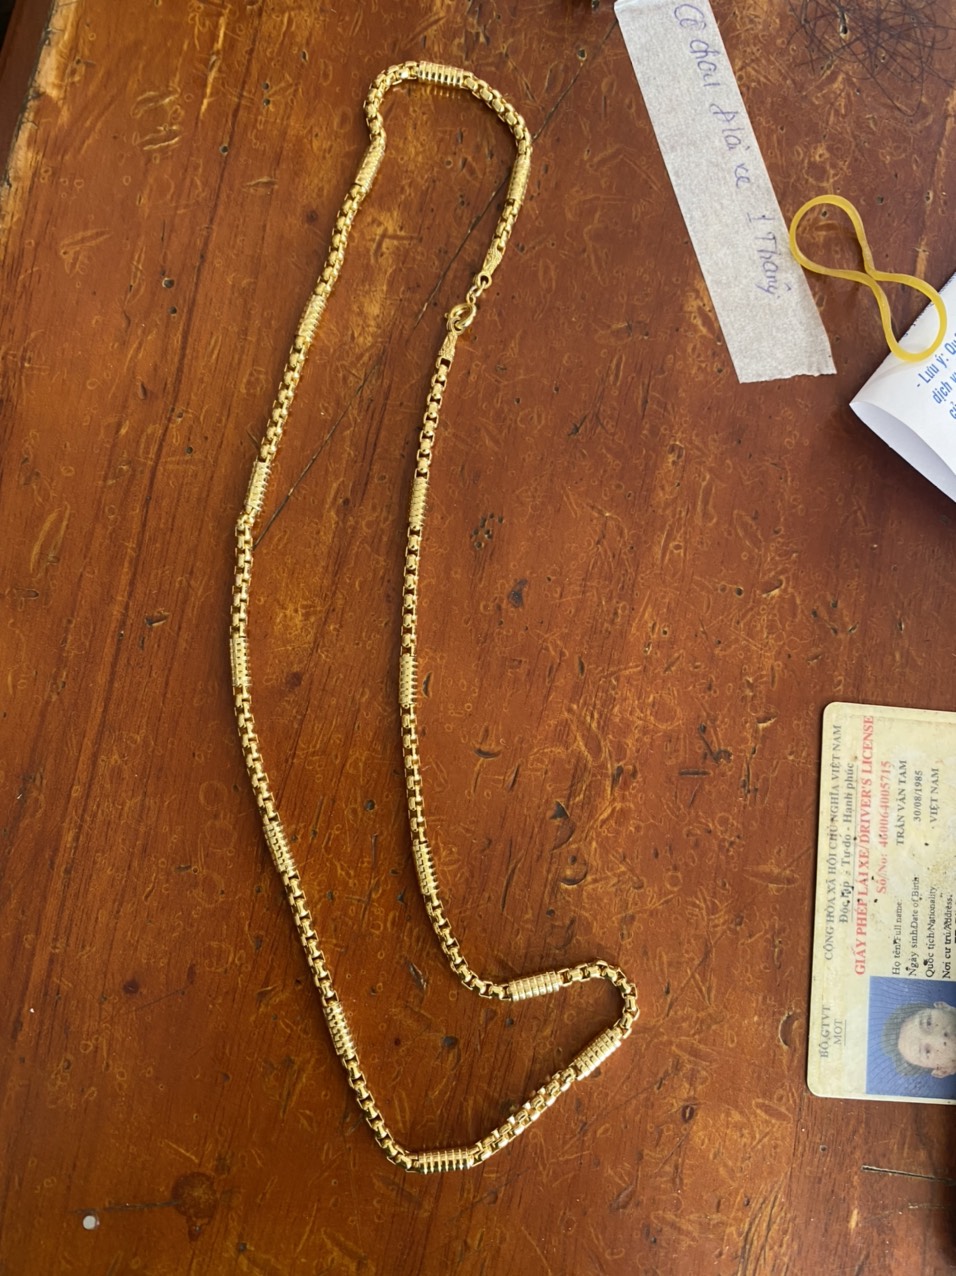 Sợi dây chuyền vàng giả được đối tượng mang đi cầm cố.